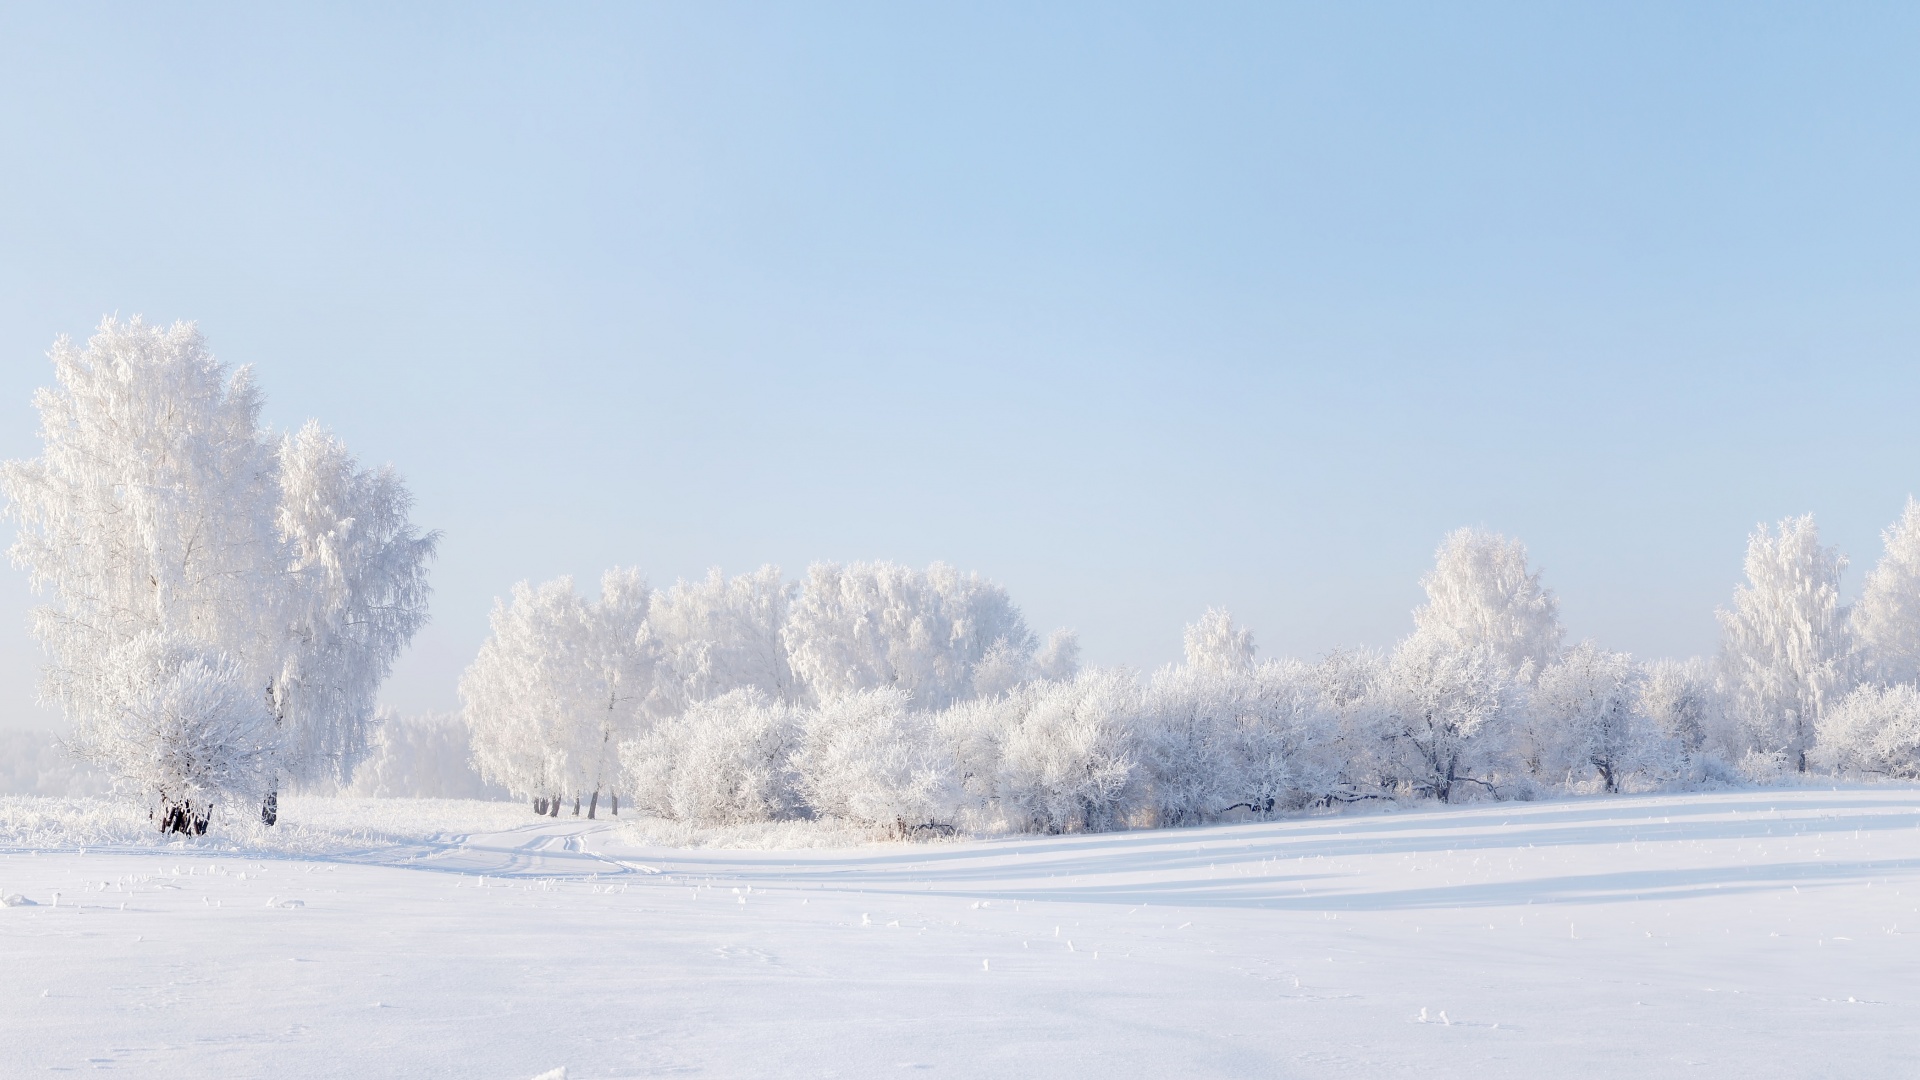 冬天的雪 天空 树木 全景风景桌面壁纸 风景壁纸 壁纸下载 彼岸桌面